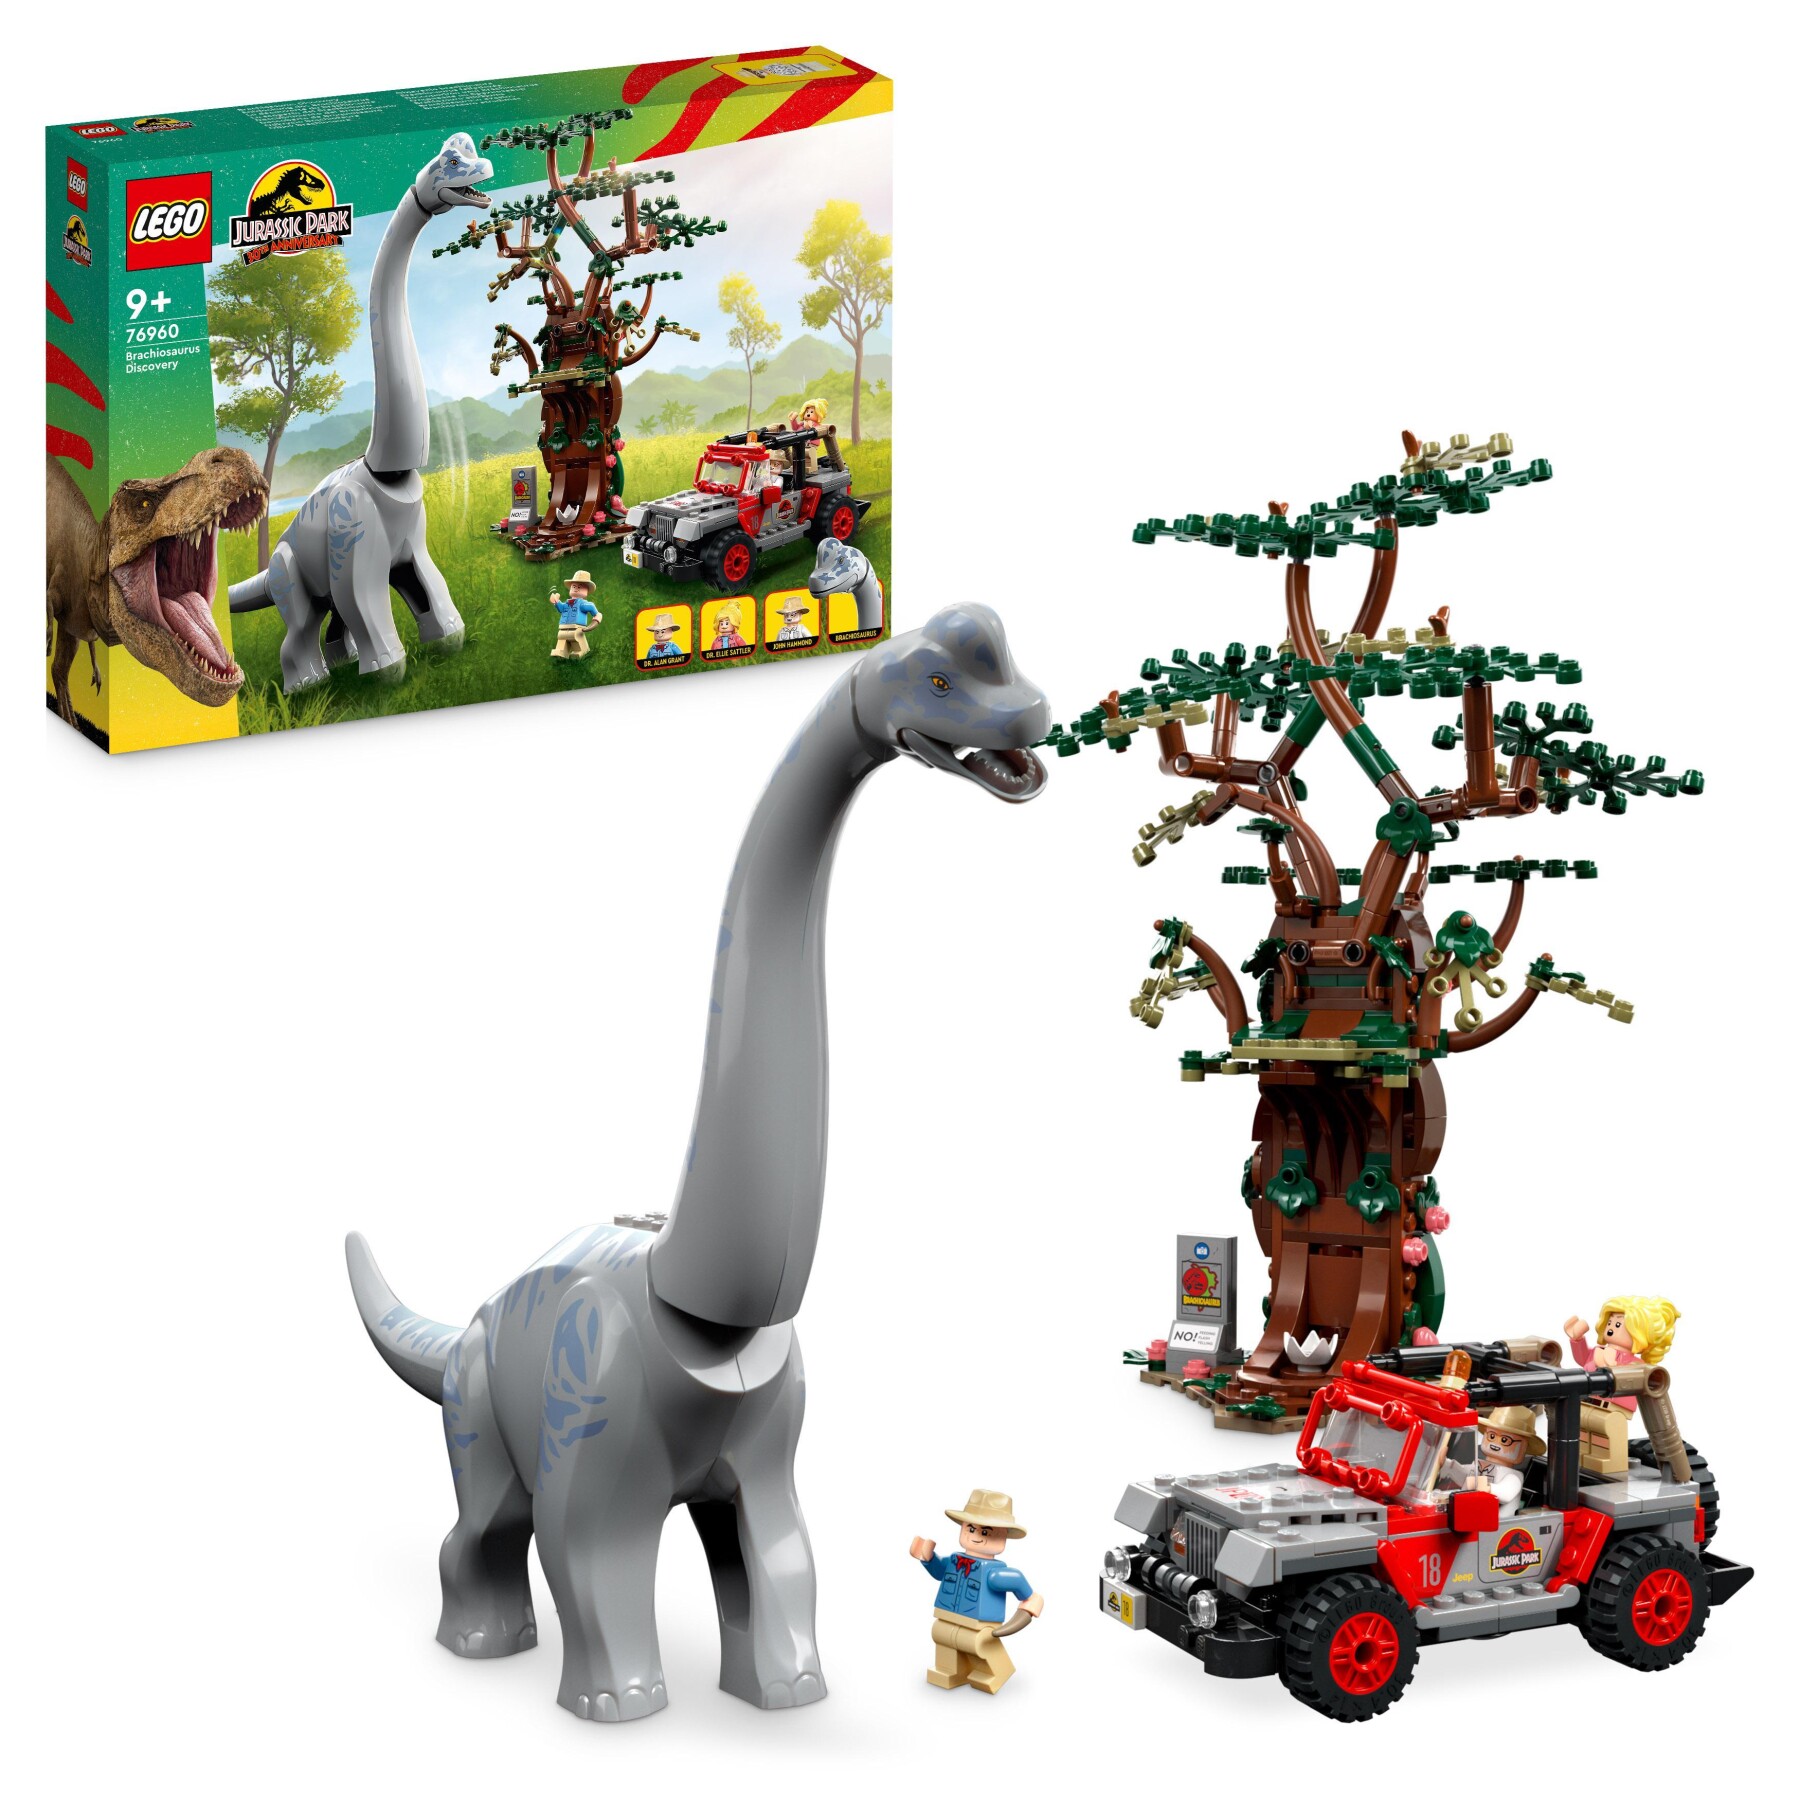 Lego jurassic park 76960 la scoperta del brachiosauro, set con grande dinosauro giocattolo e jeep wrangler da costruire - Jurassic World, LEGO JURASSIC PARK/W